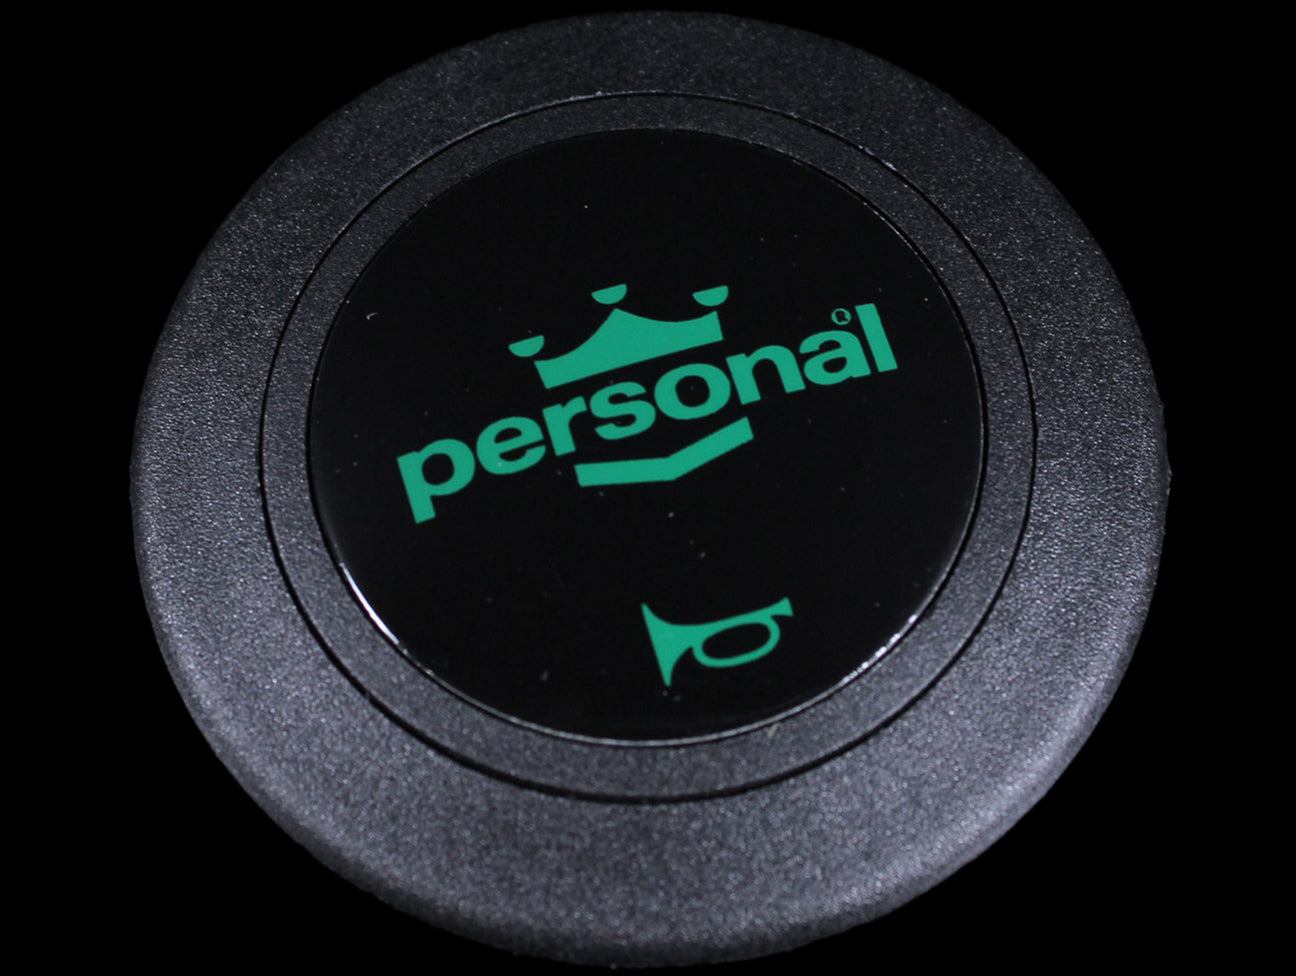 Personal Horn Button - Green